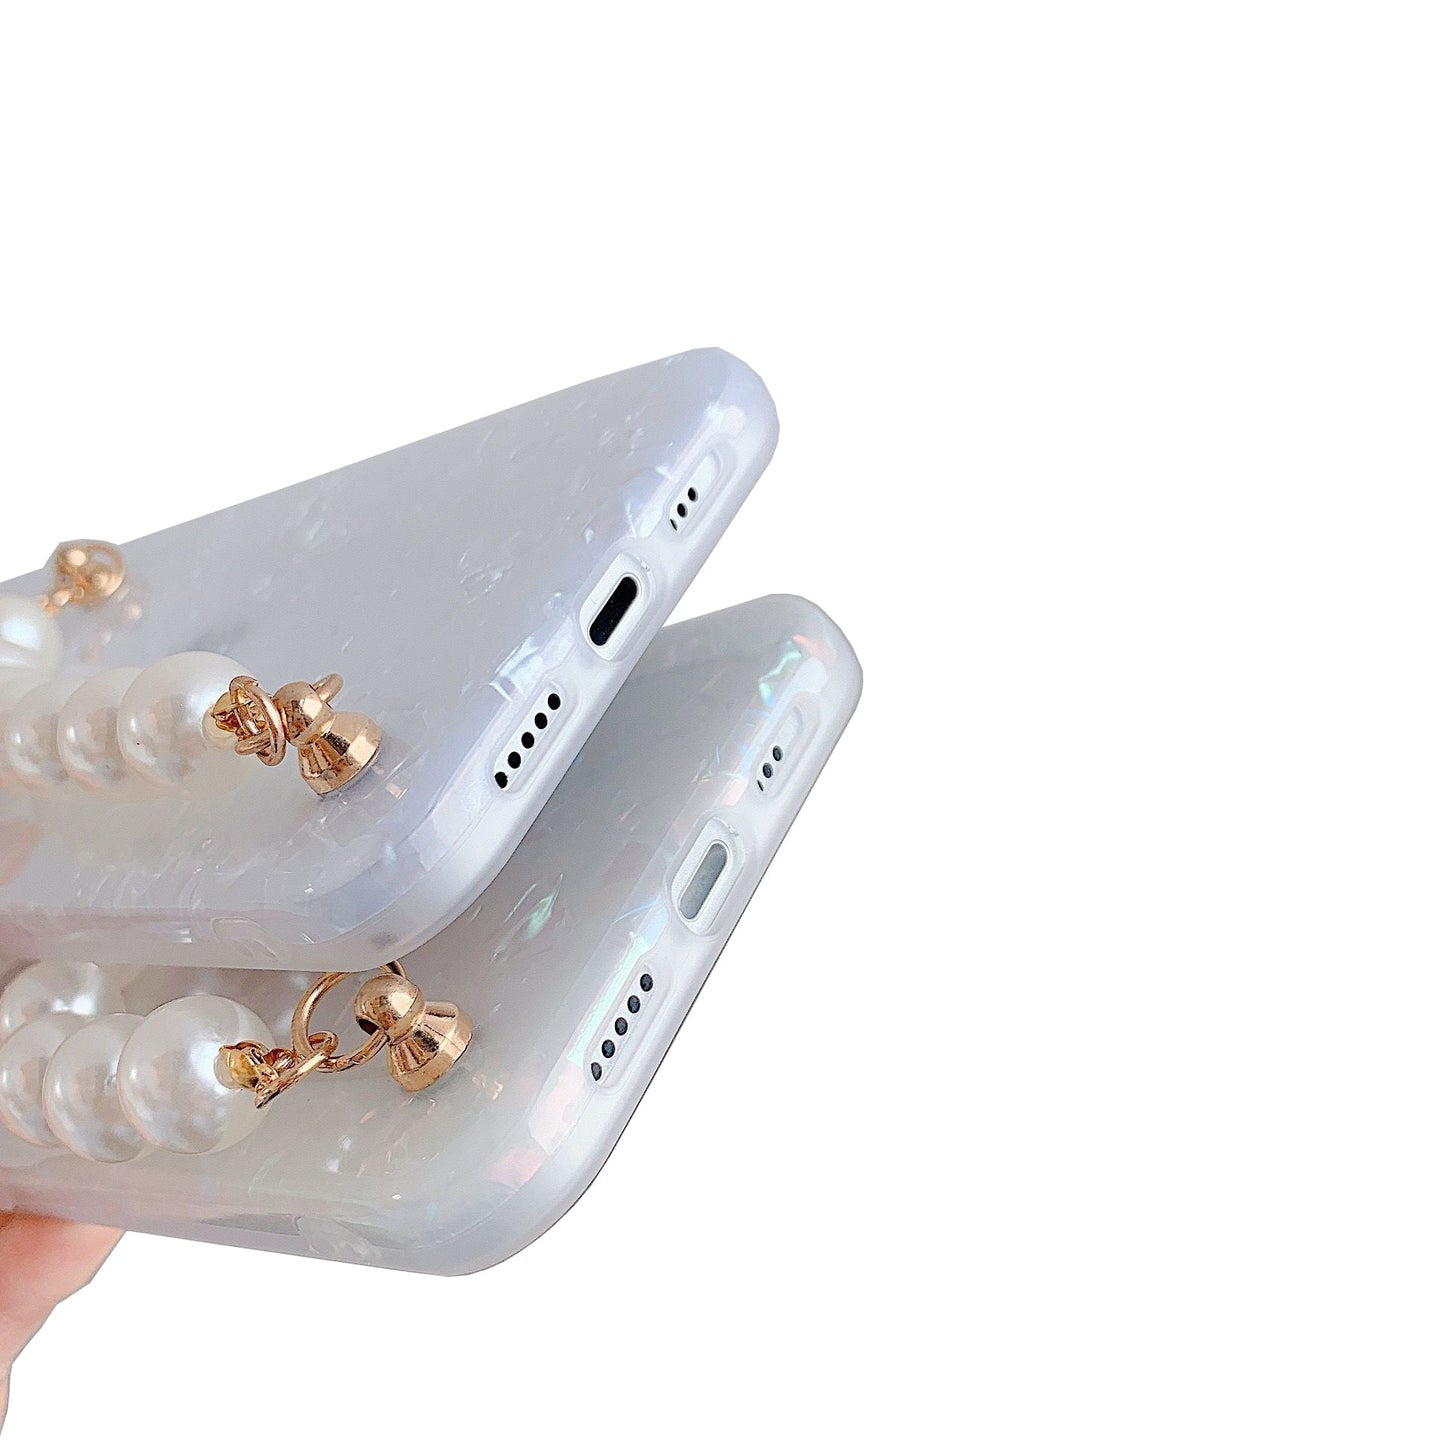 Premium iPhone 13 Pro Max Case : White Pearl Holder